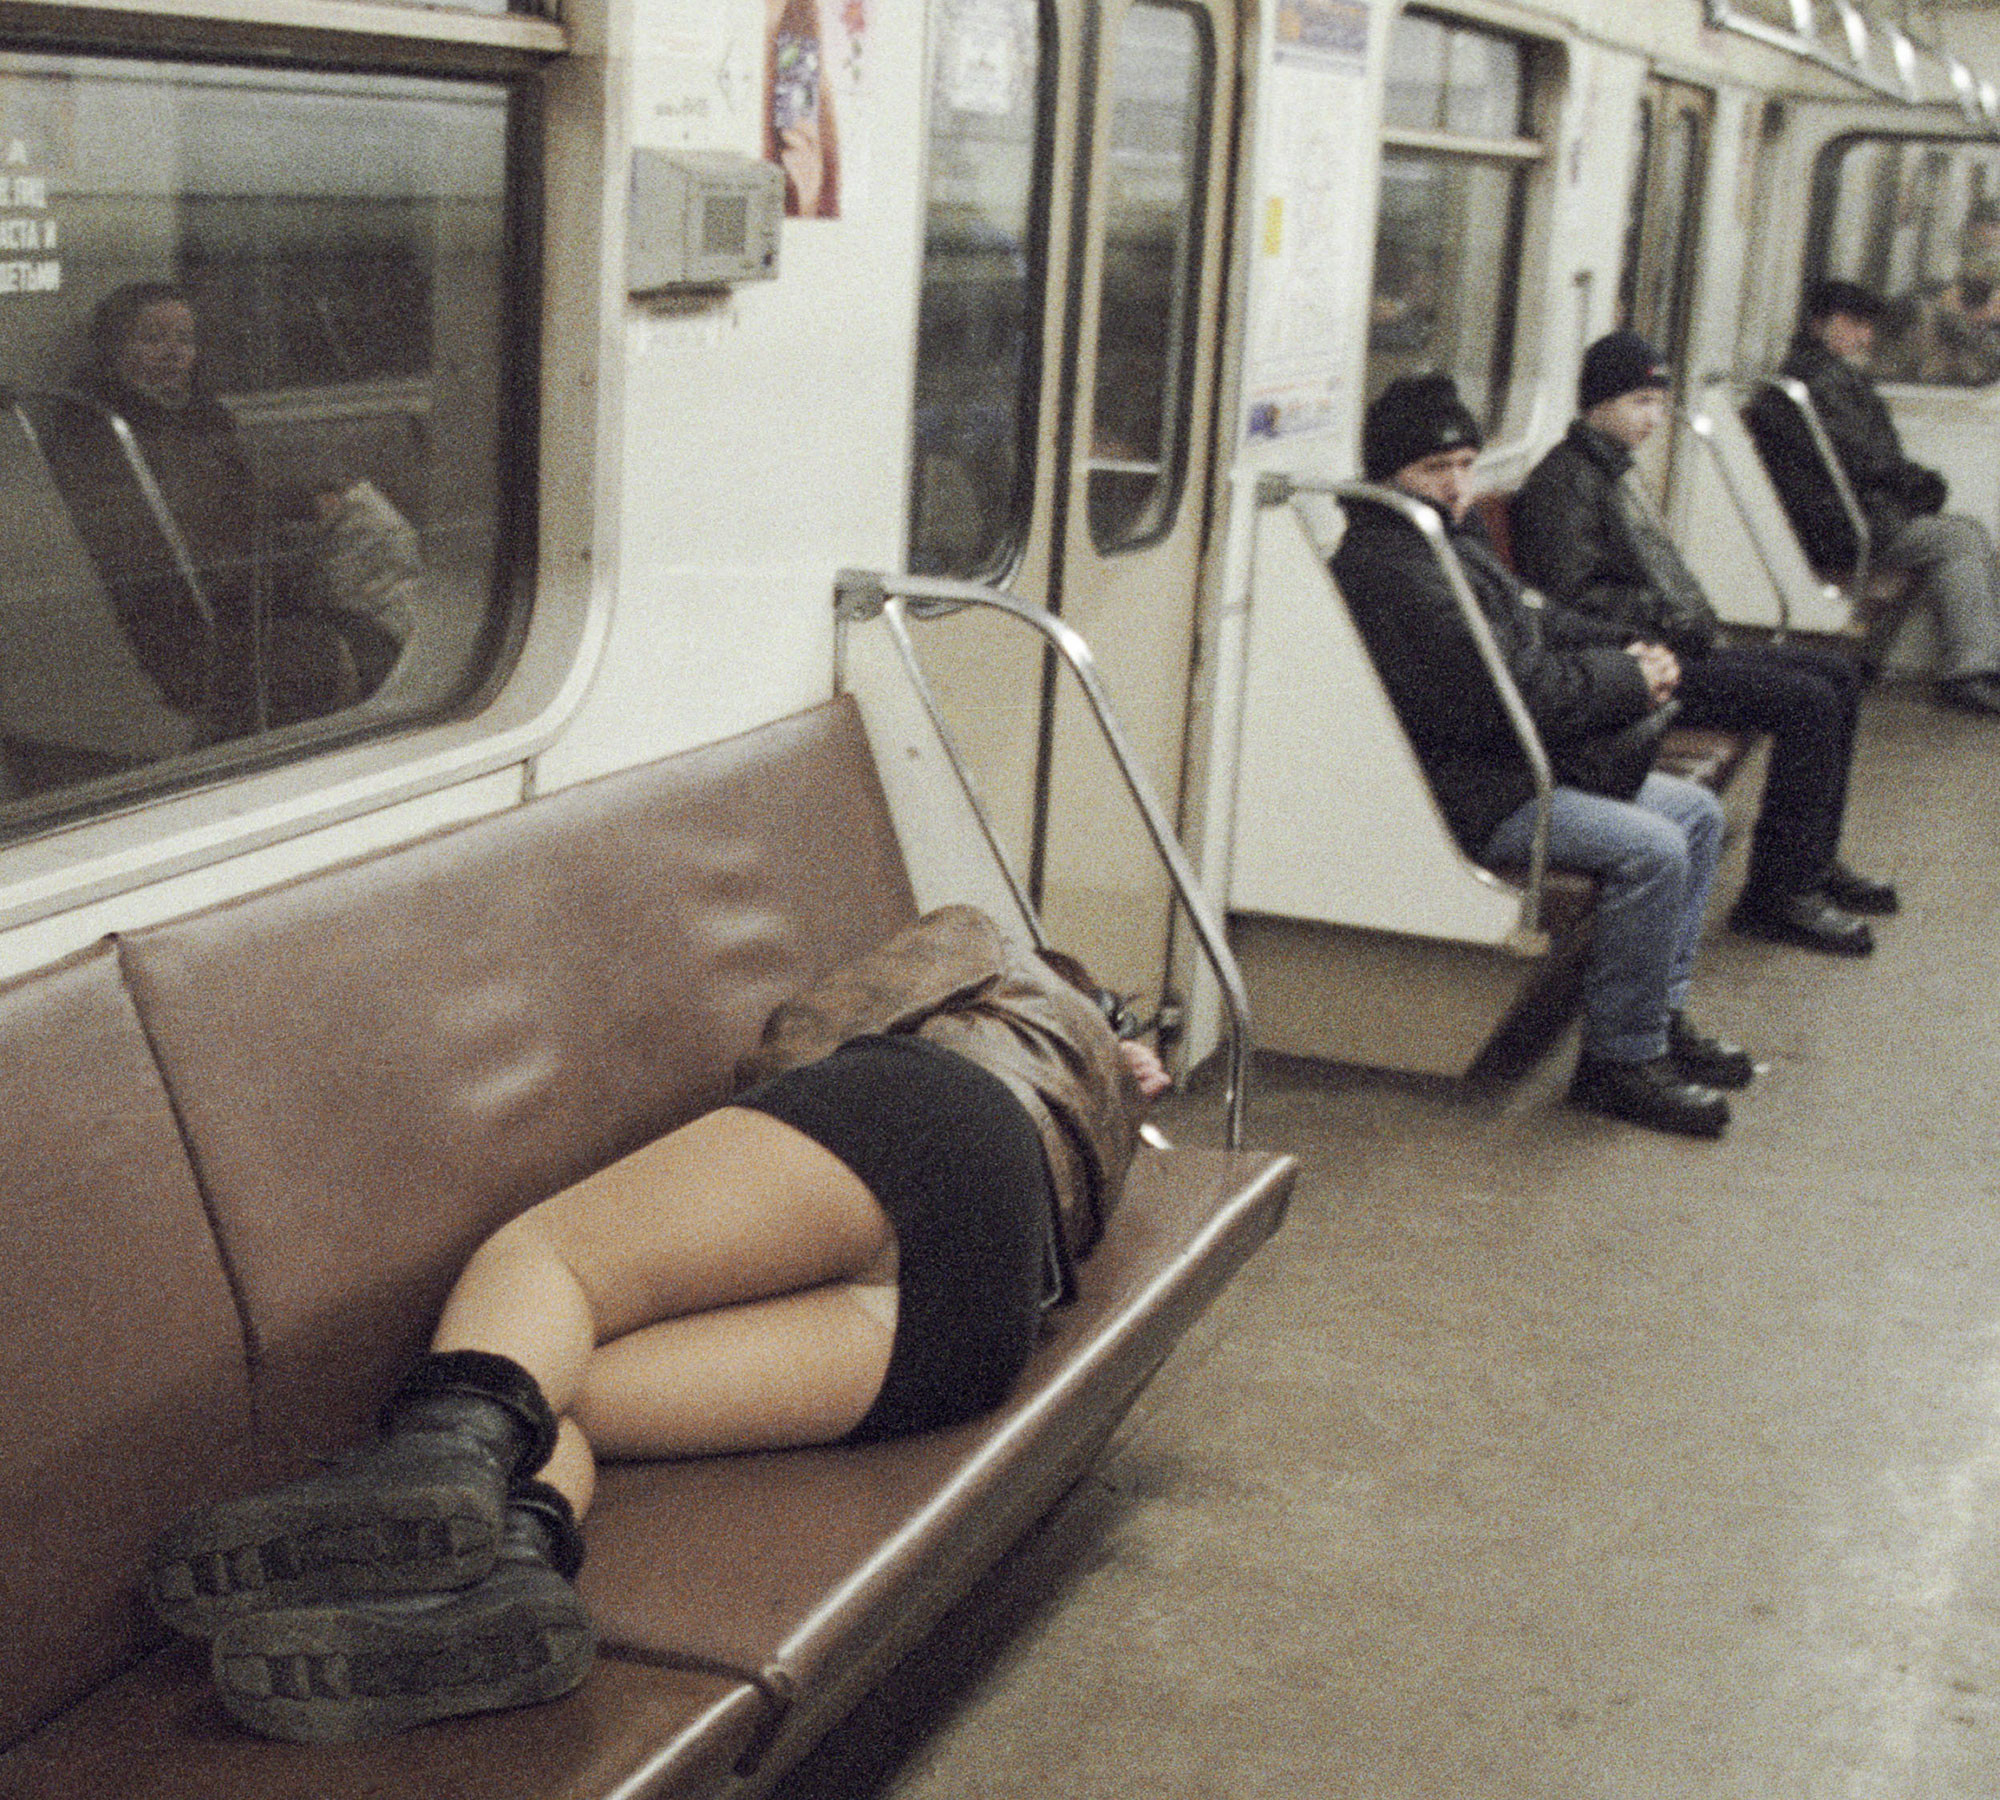 Проститутка отдыхает в вагоне Кольцевой линии Московского метрополитена. Фото: © РИА Новости / Олег Ласточкин